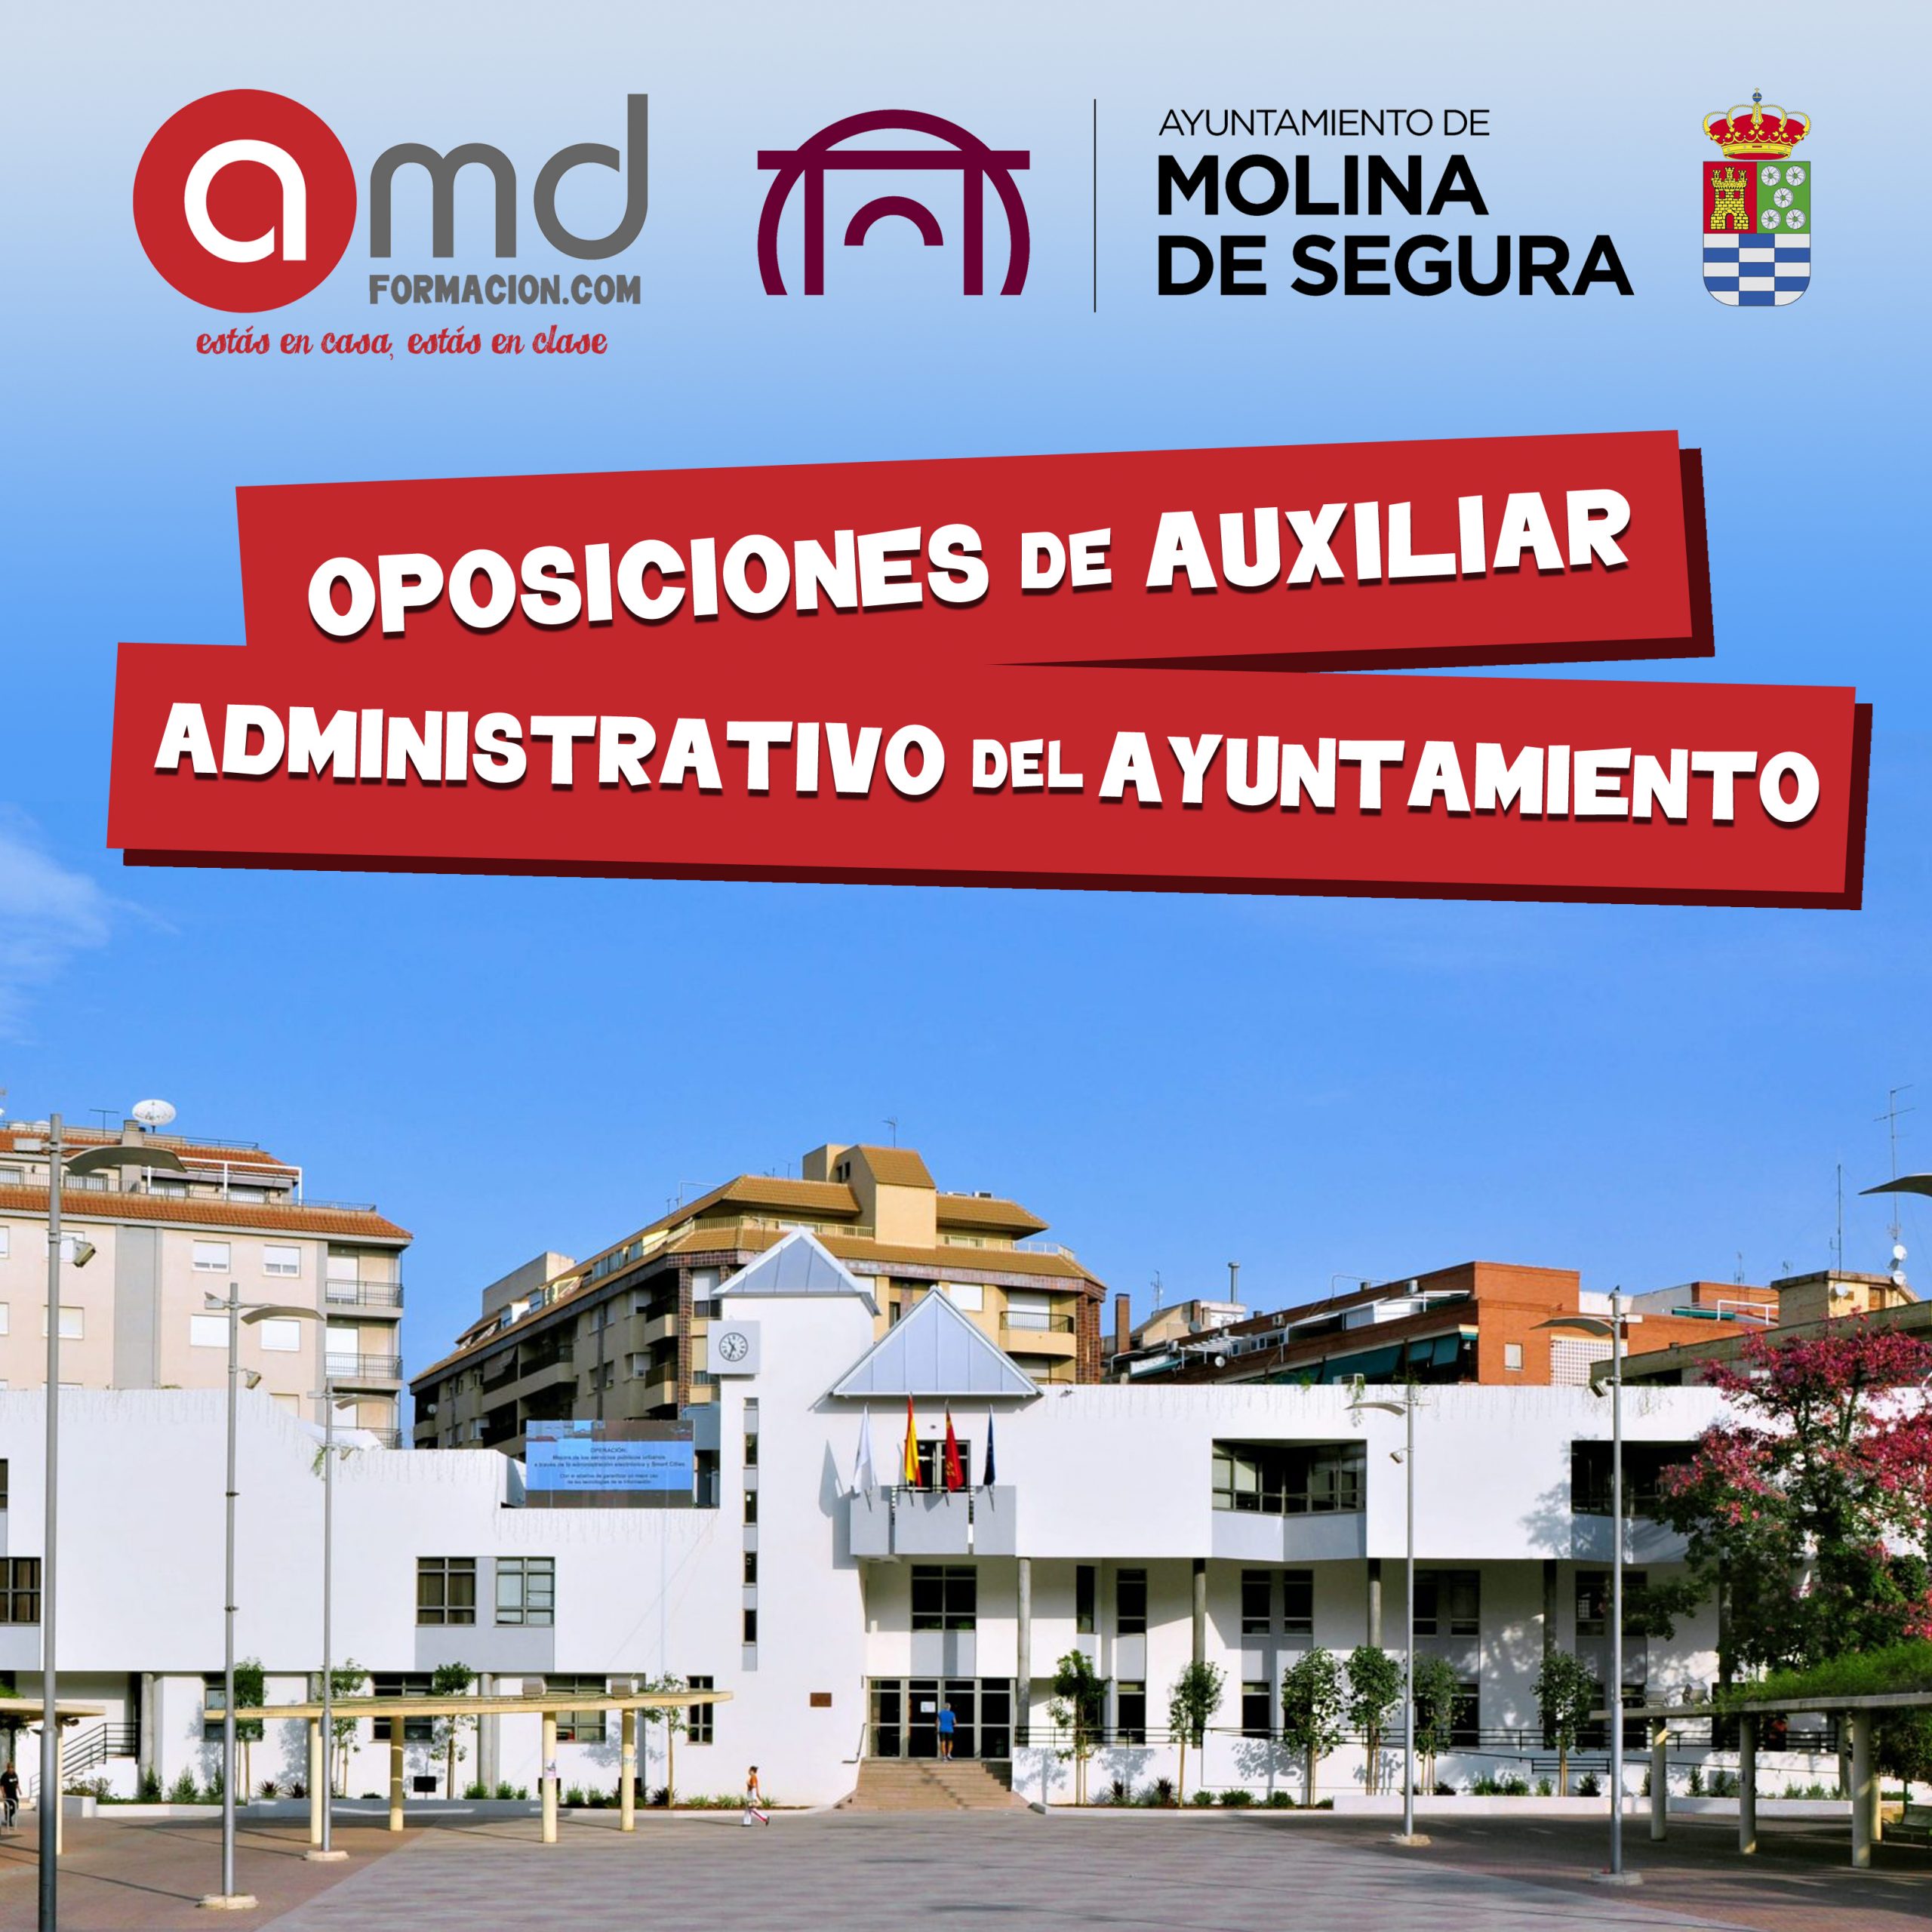 Ayuntamiento de Molina